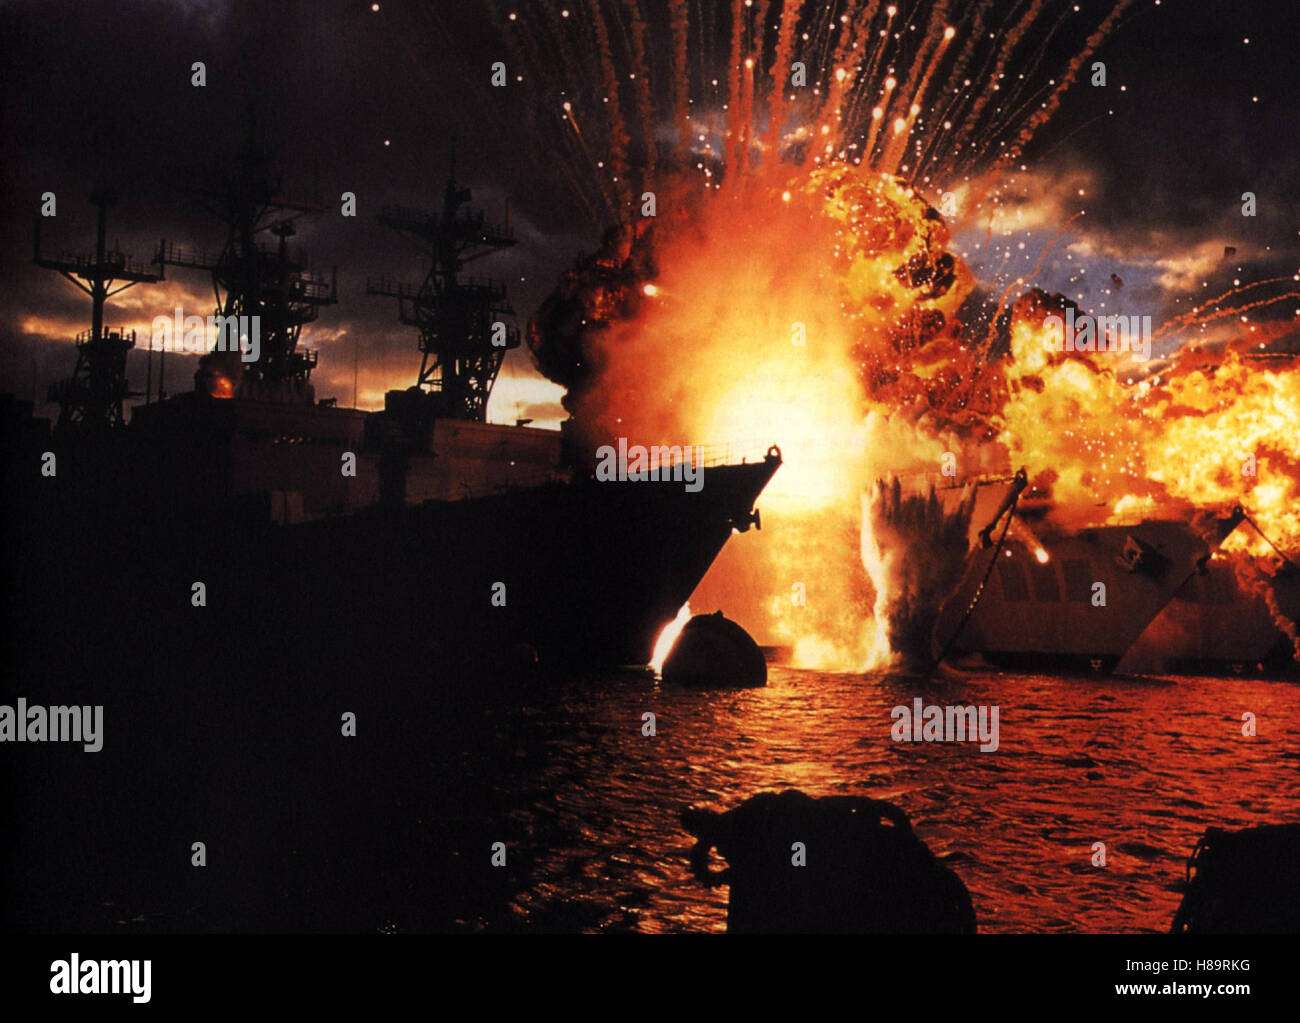 Pearl Harbor (2001) de los Estados Unidos, Pearl Harbor, Regie: Michael Bay, Szene, Stichwort: Krieg, Flammen, explosión, Schiff Foto de stock